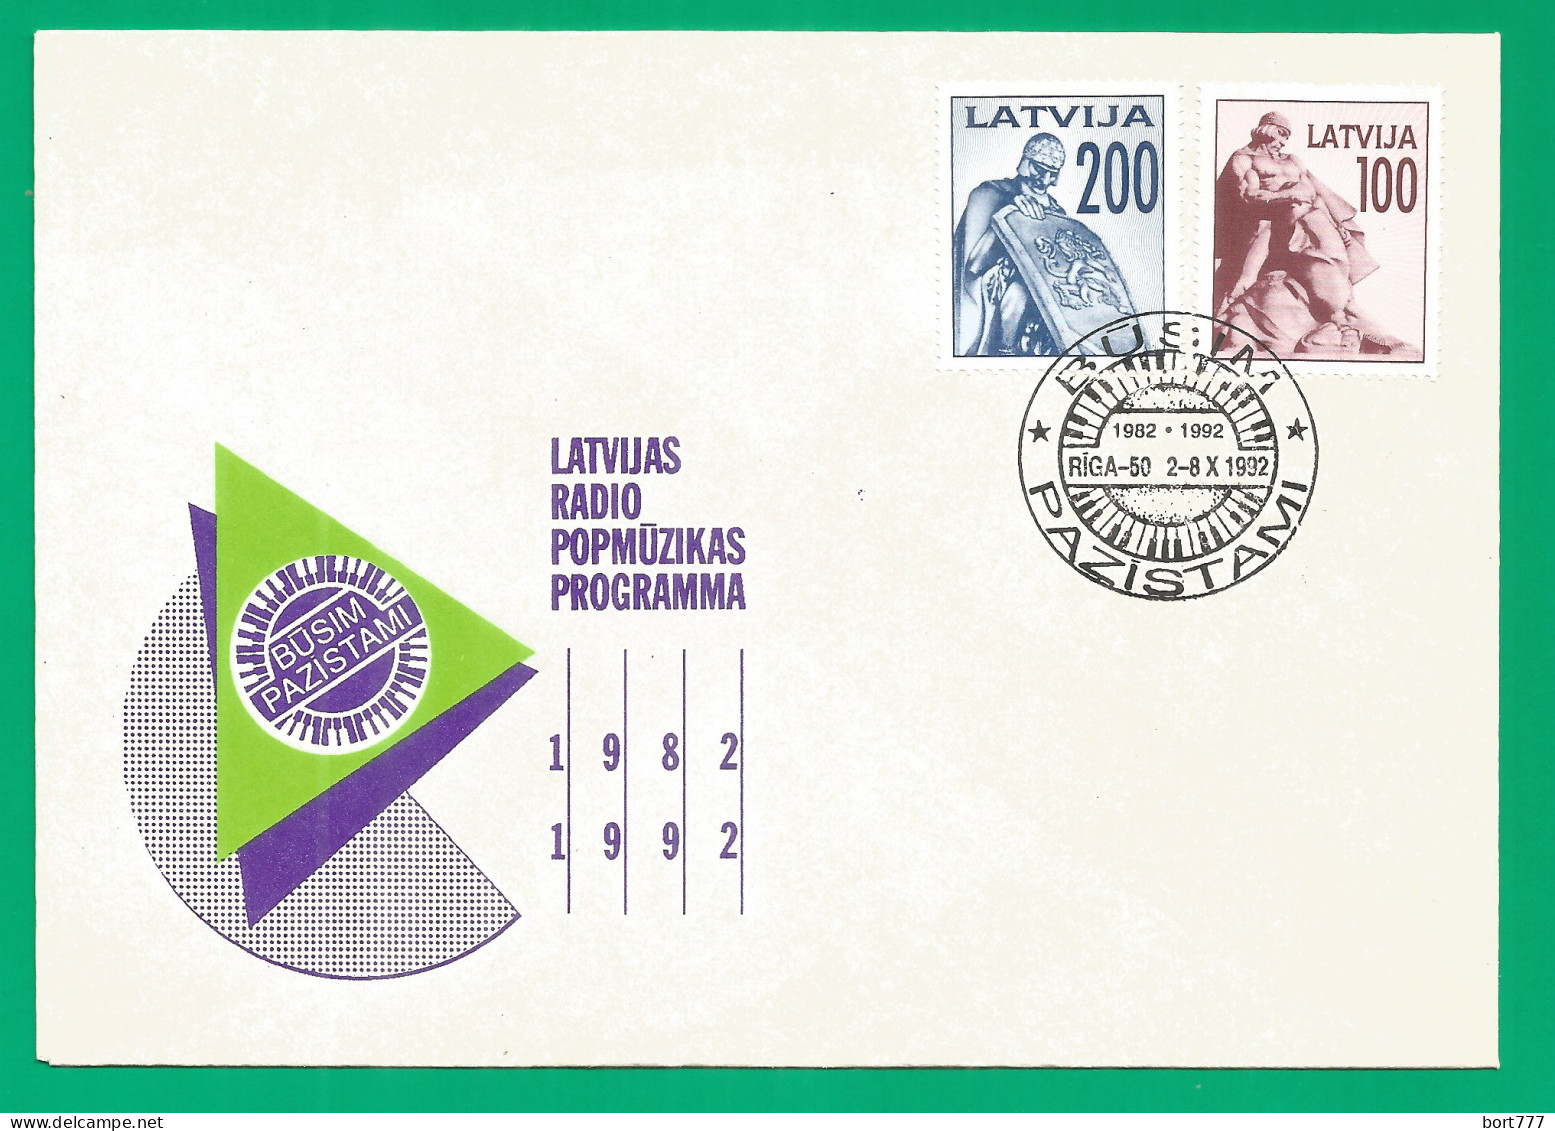 Latvia Mint Cover 1992 Year Radio Program - Latvia